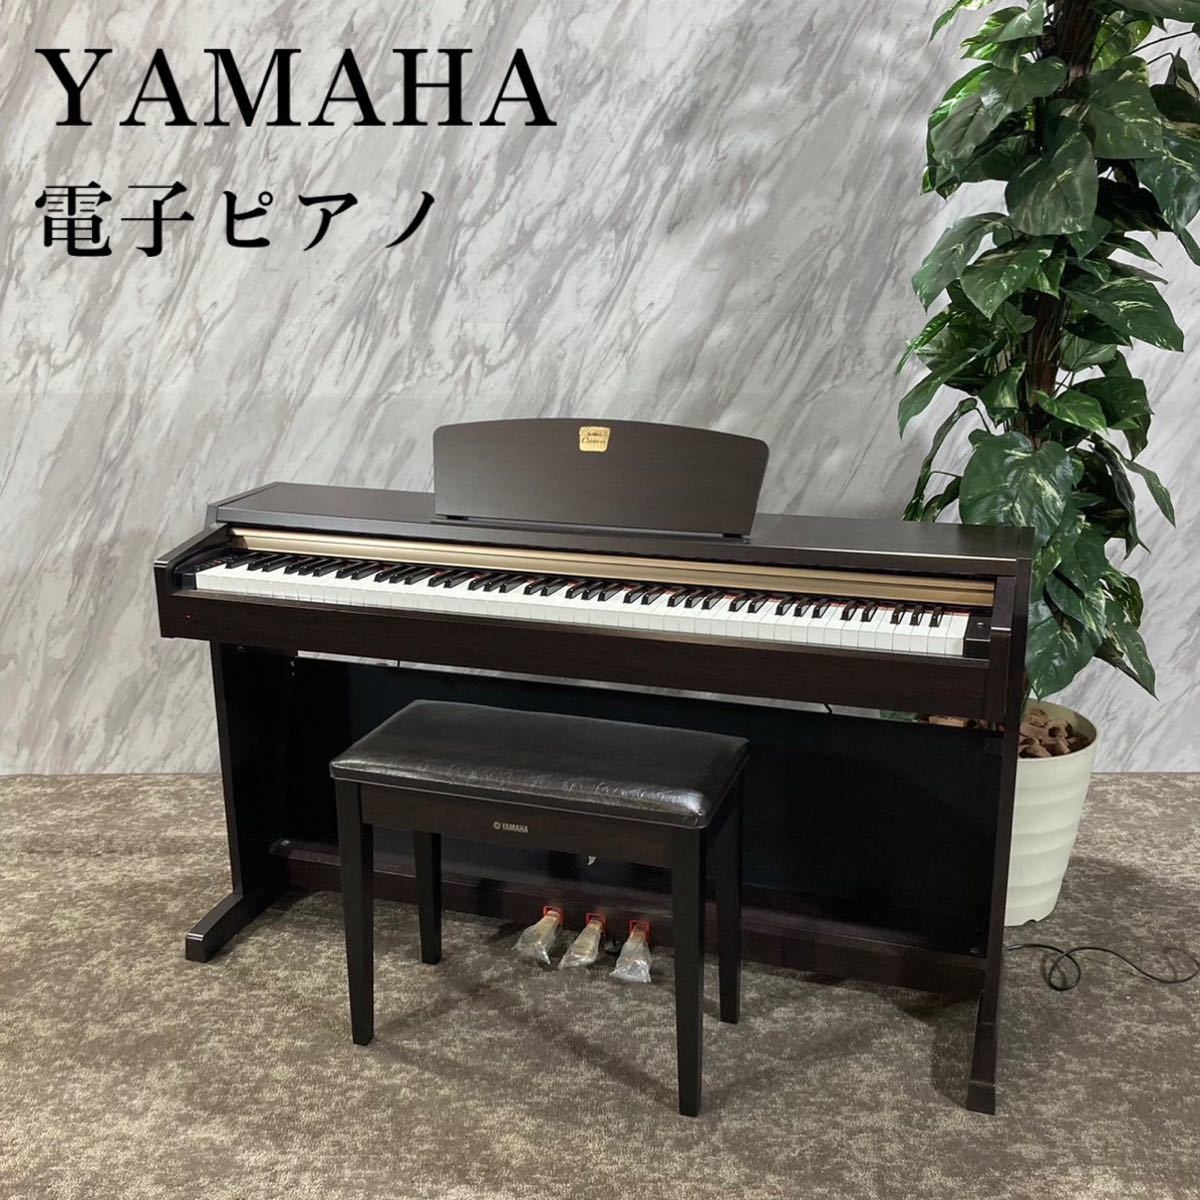 YAMAHA ヤマハ 電子ピアノ CLP-220 Clavinova G082